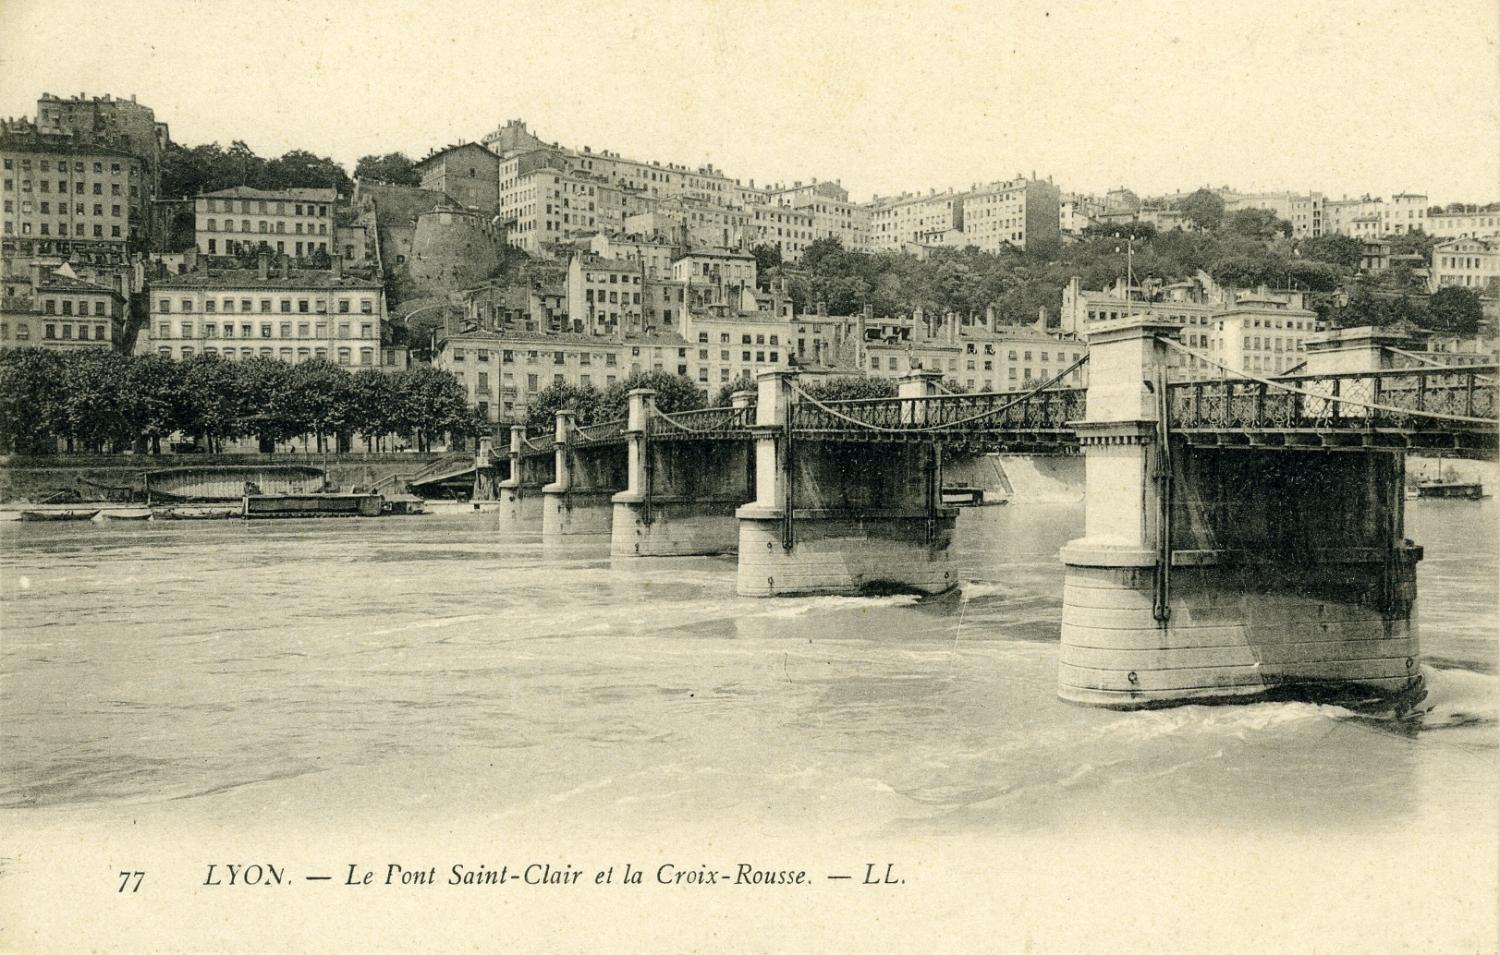 Lyon. - Le Pont Saint-Clair et la Croix-Rousse.